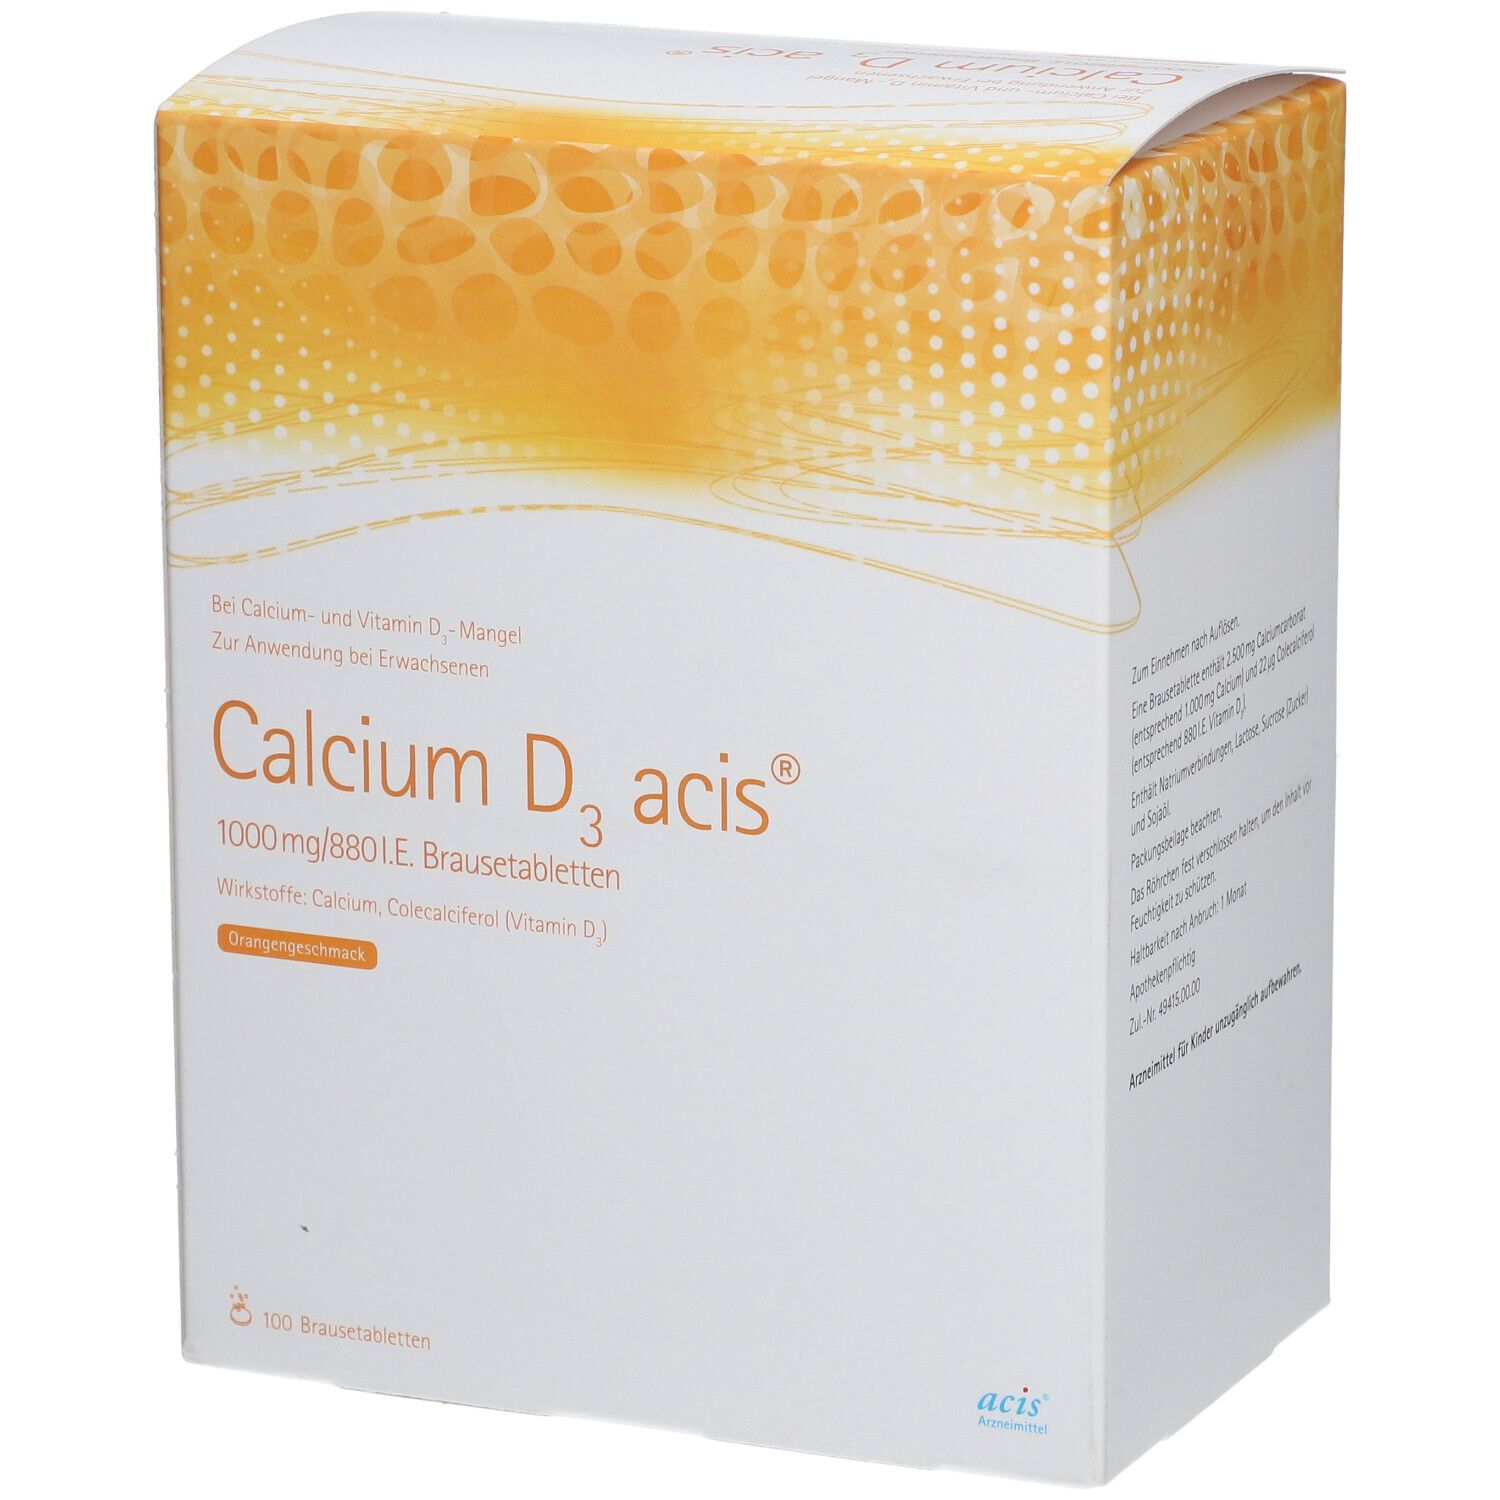 Calcium D3 acis® 1000 mg/880 I.E.